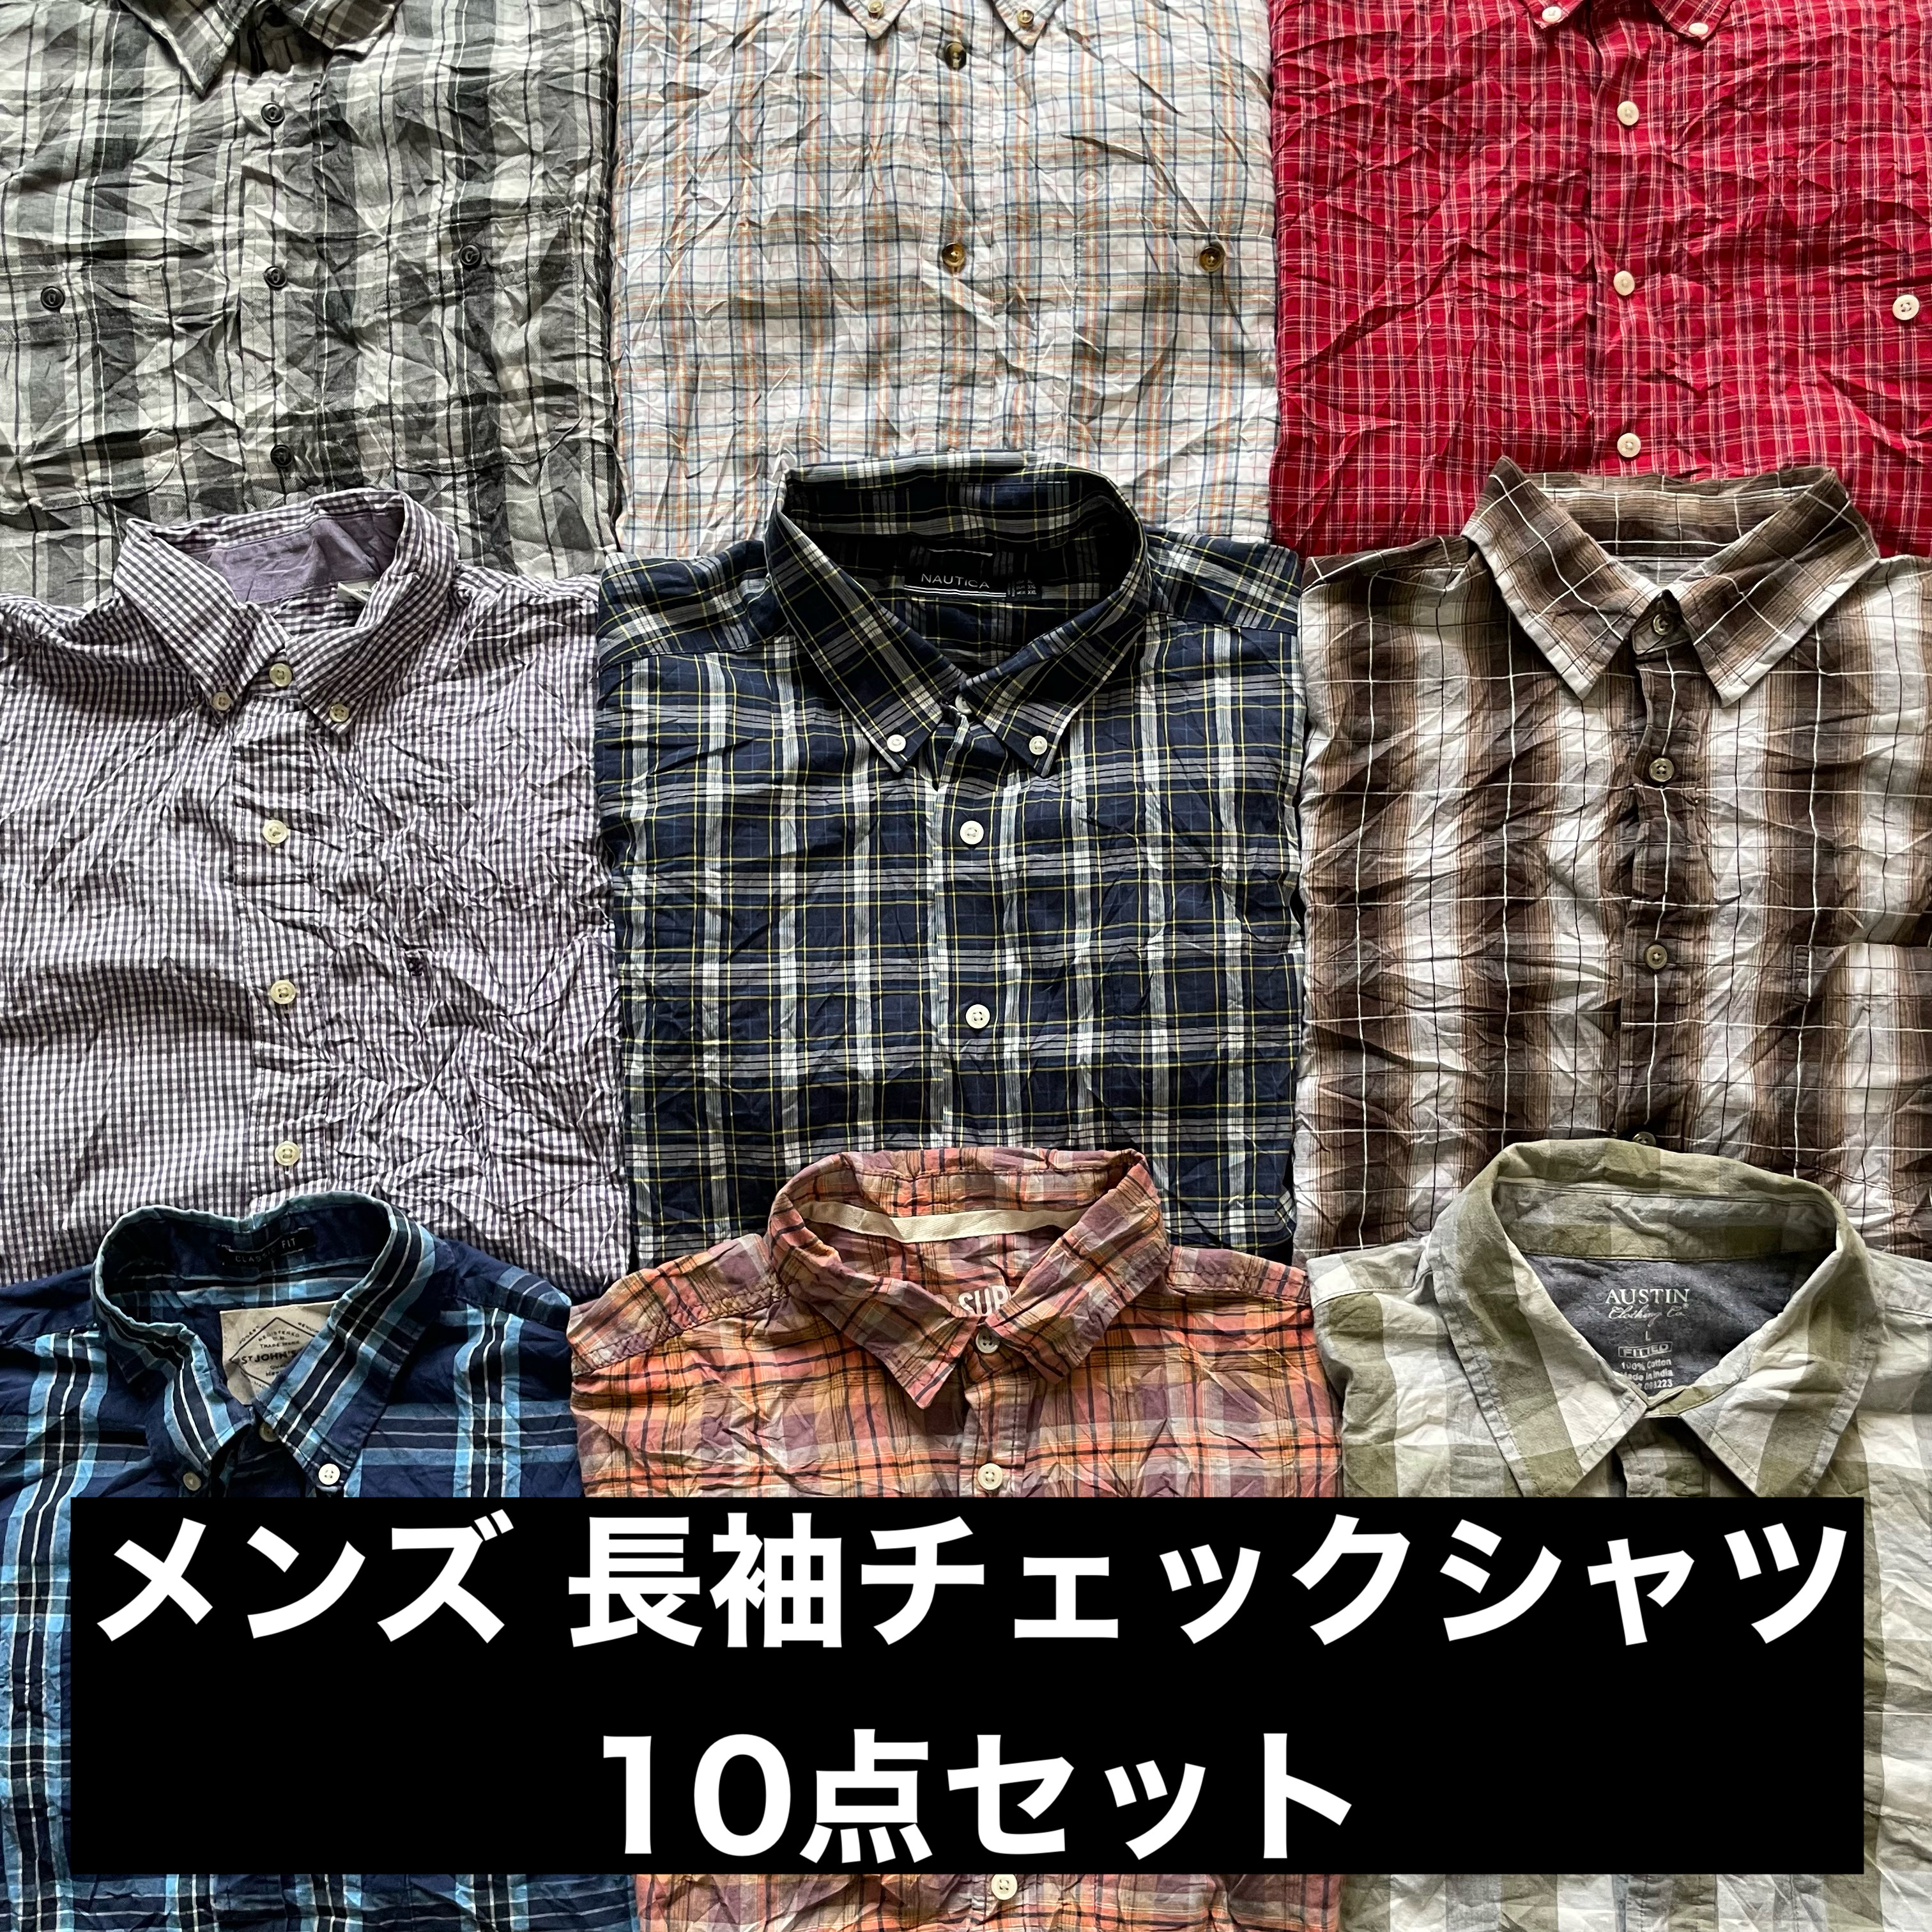 本日新入荷‎📢 長袖チェックシャツ10点セットと長袖ストライプシャツ10点セット‼️